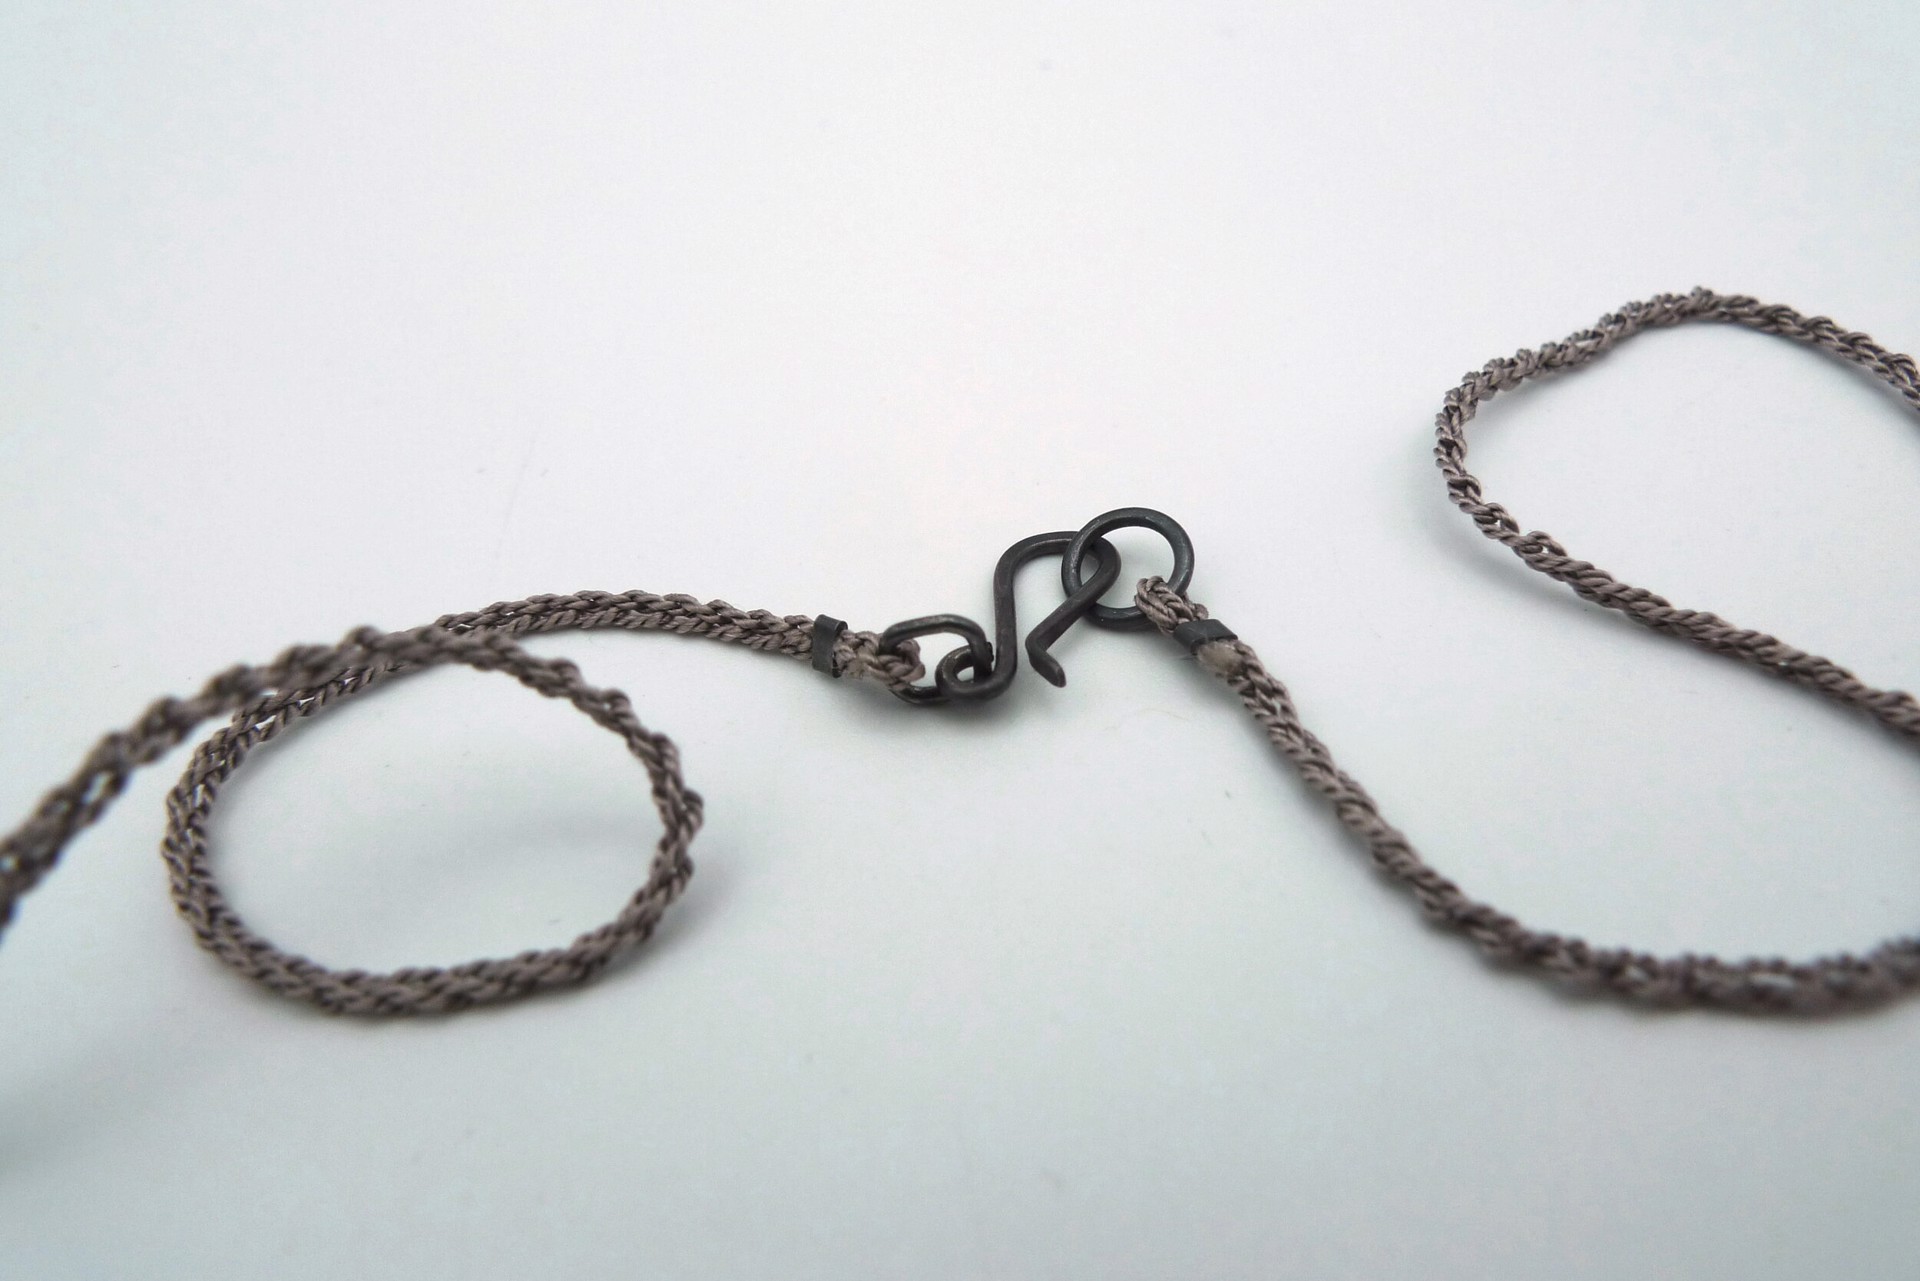 Pattern Piece #2 Necklace by Erica Schlueter